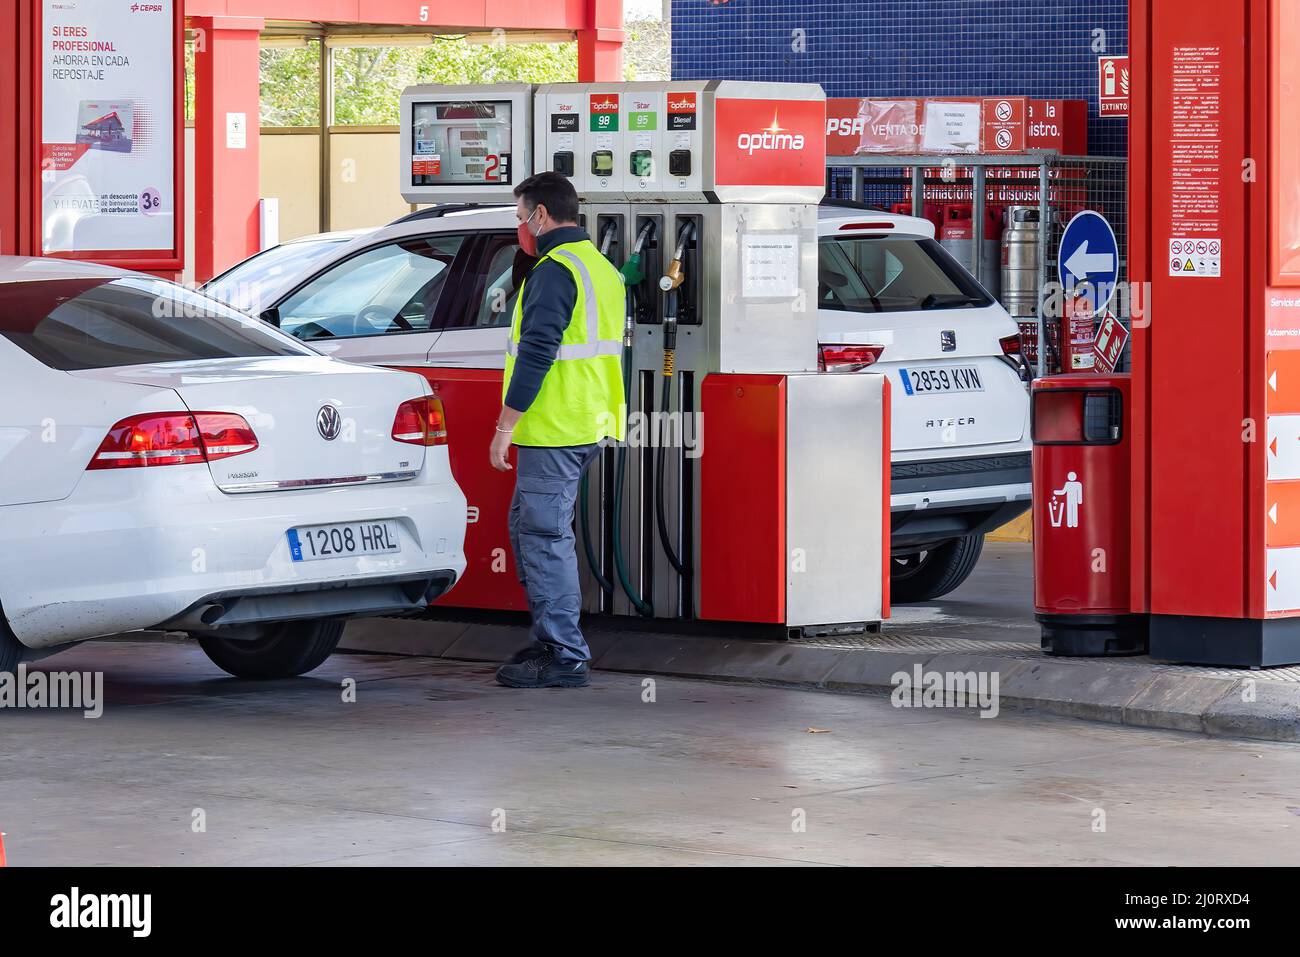 Huelva, Spagna - 6 marzo 2022: Vista di una pompa di benzina in una stazione di benzina con un'automobile che sta rifornendo Foto Stock